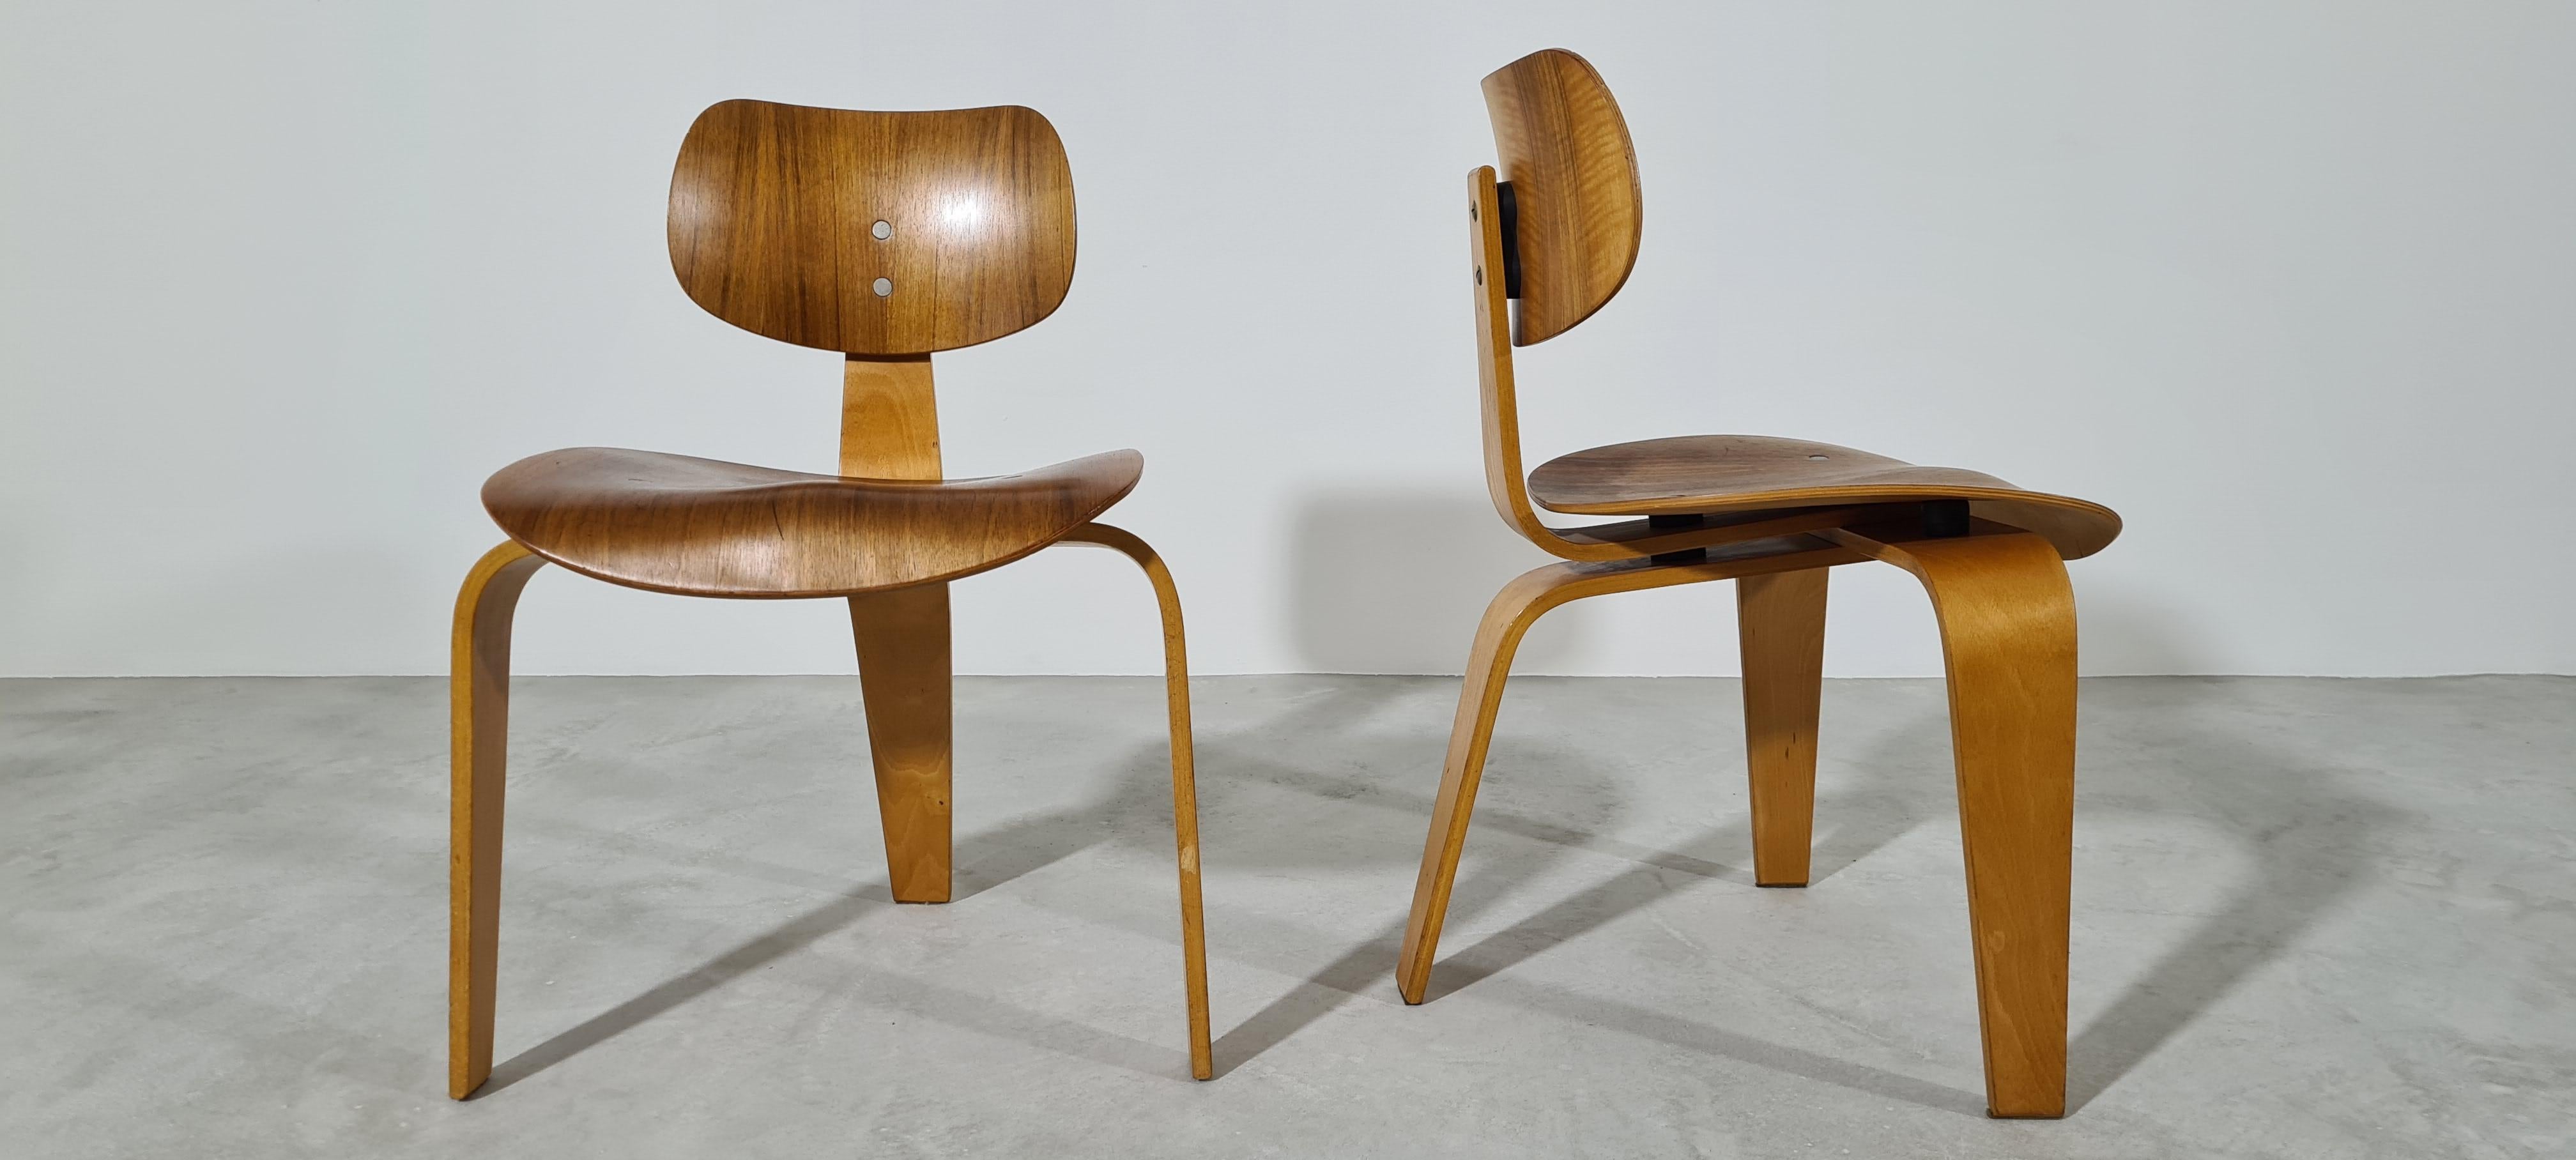 Un bel ensemble de deux chaises SE 42 conçues en 1942 par Egon Eiermann pour Wilde & Spieth, Allemagne.
Les chaises en contreplaqué sont en état original inaltéré de 1950 dans la rare finition noyer - voir aussi l'étiquette originale avec la